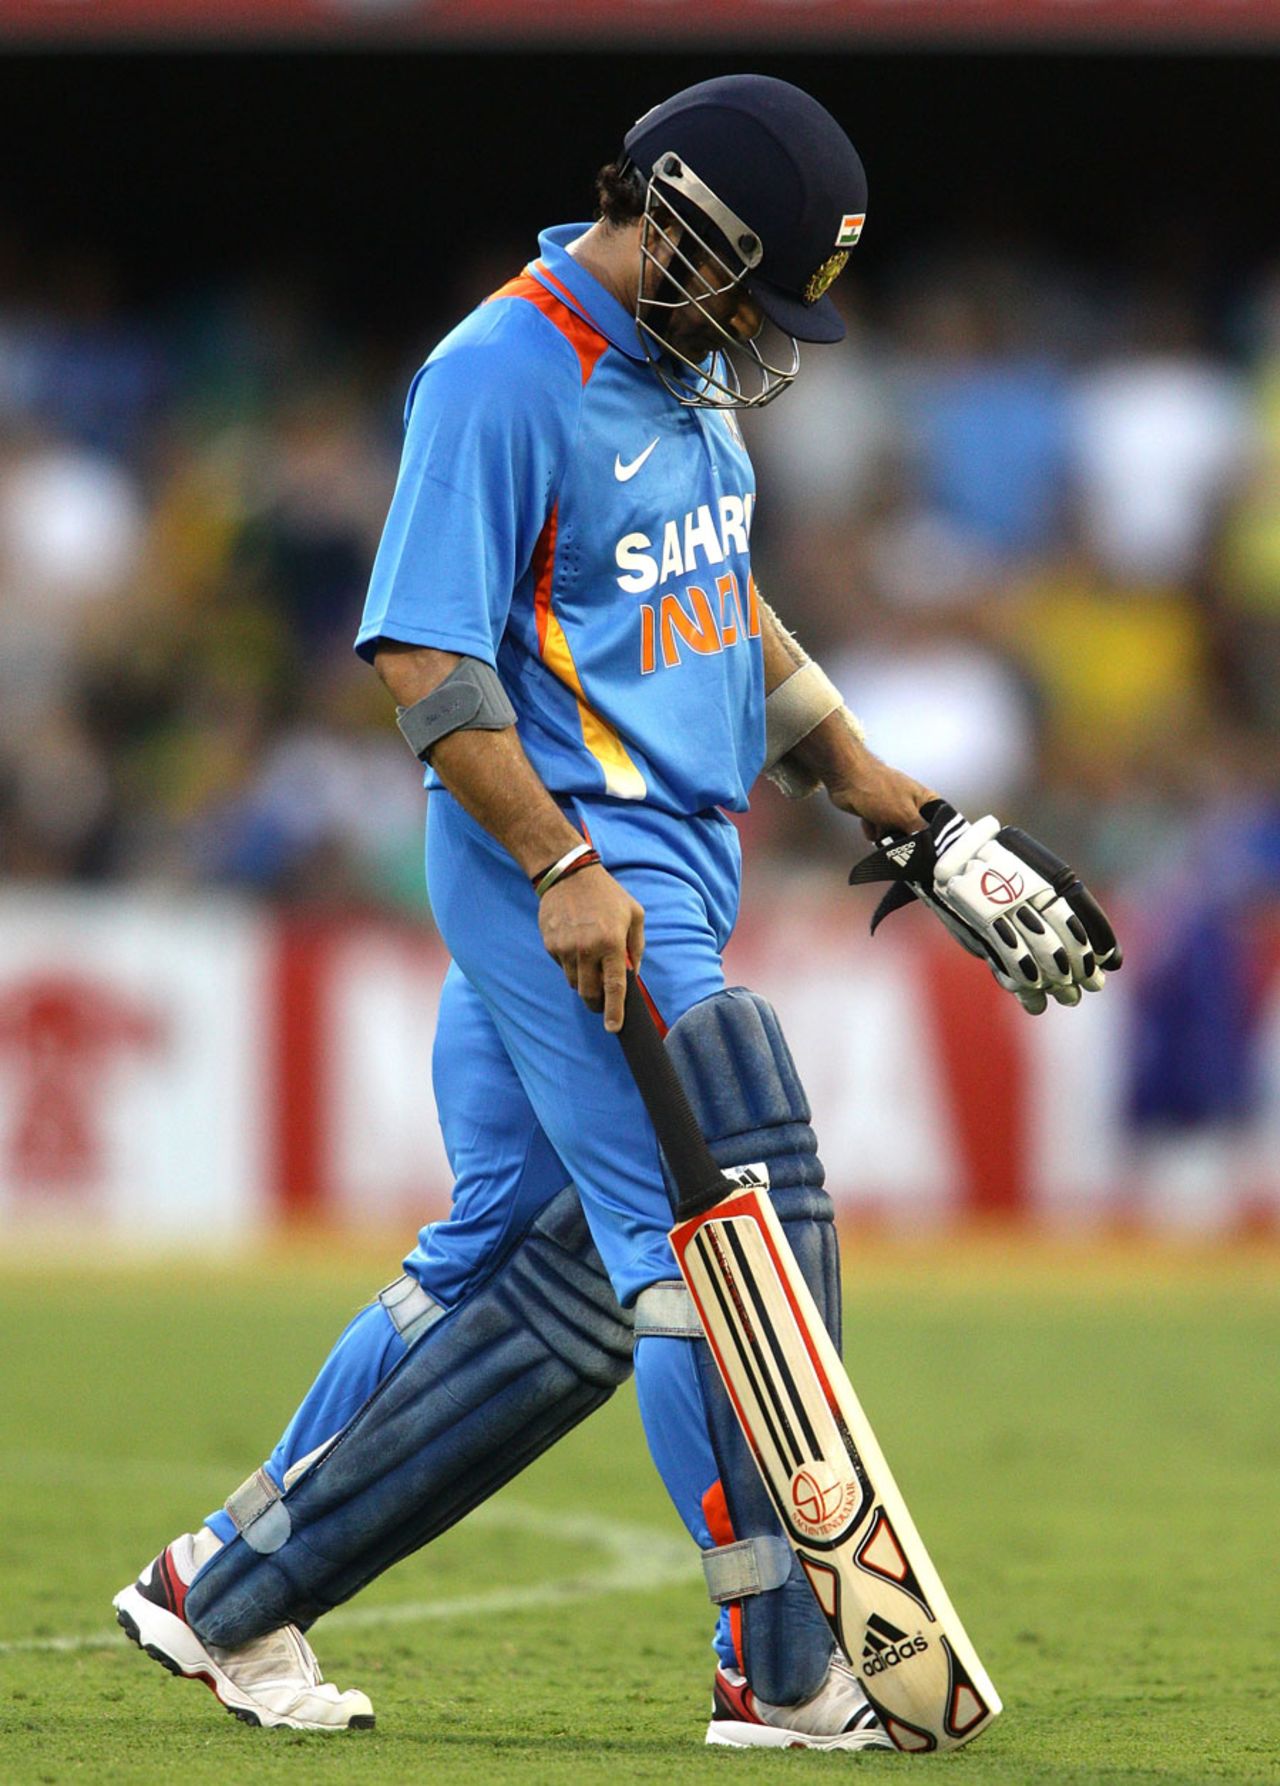 Another failure for Sachin Tendulkar, Australia v India, CB Series, Brisbane, February 19, 2012